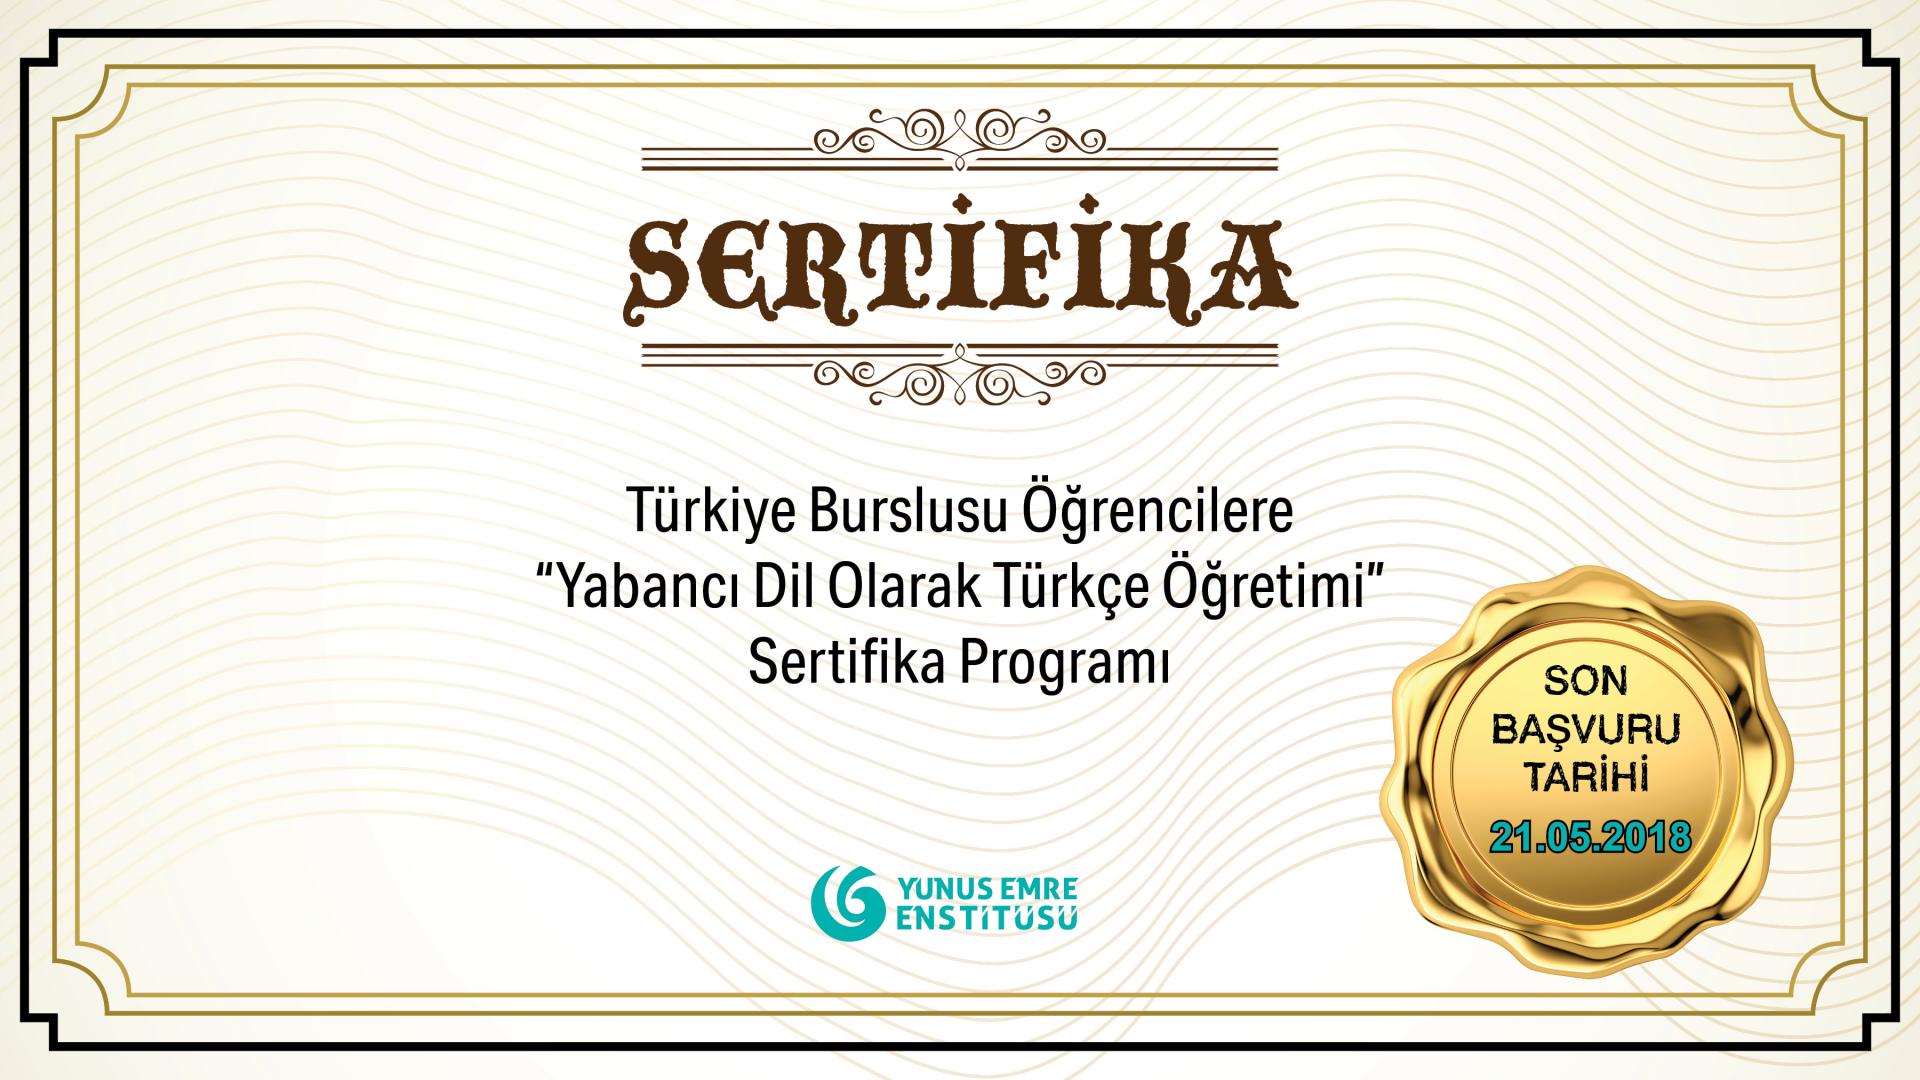 Türkiye Burslusu Öğrencilere “Yabancı Dil Olarak Türkçe Öğretimi” Sertifika Programı